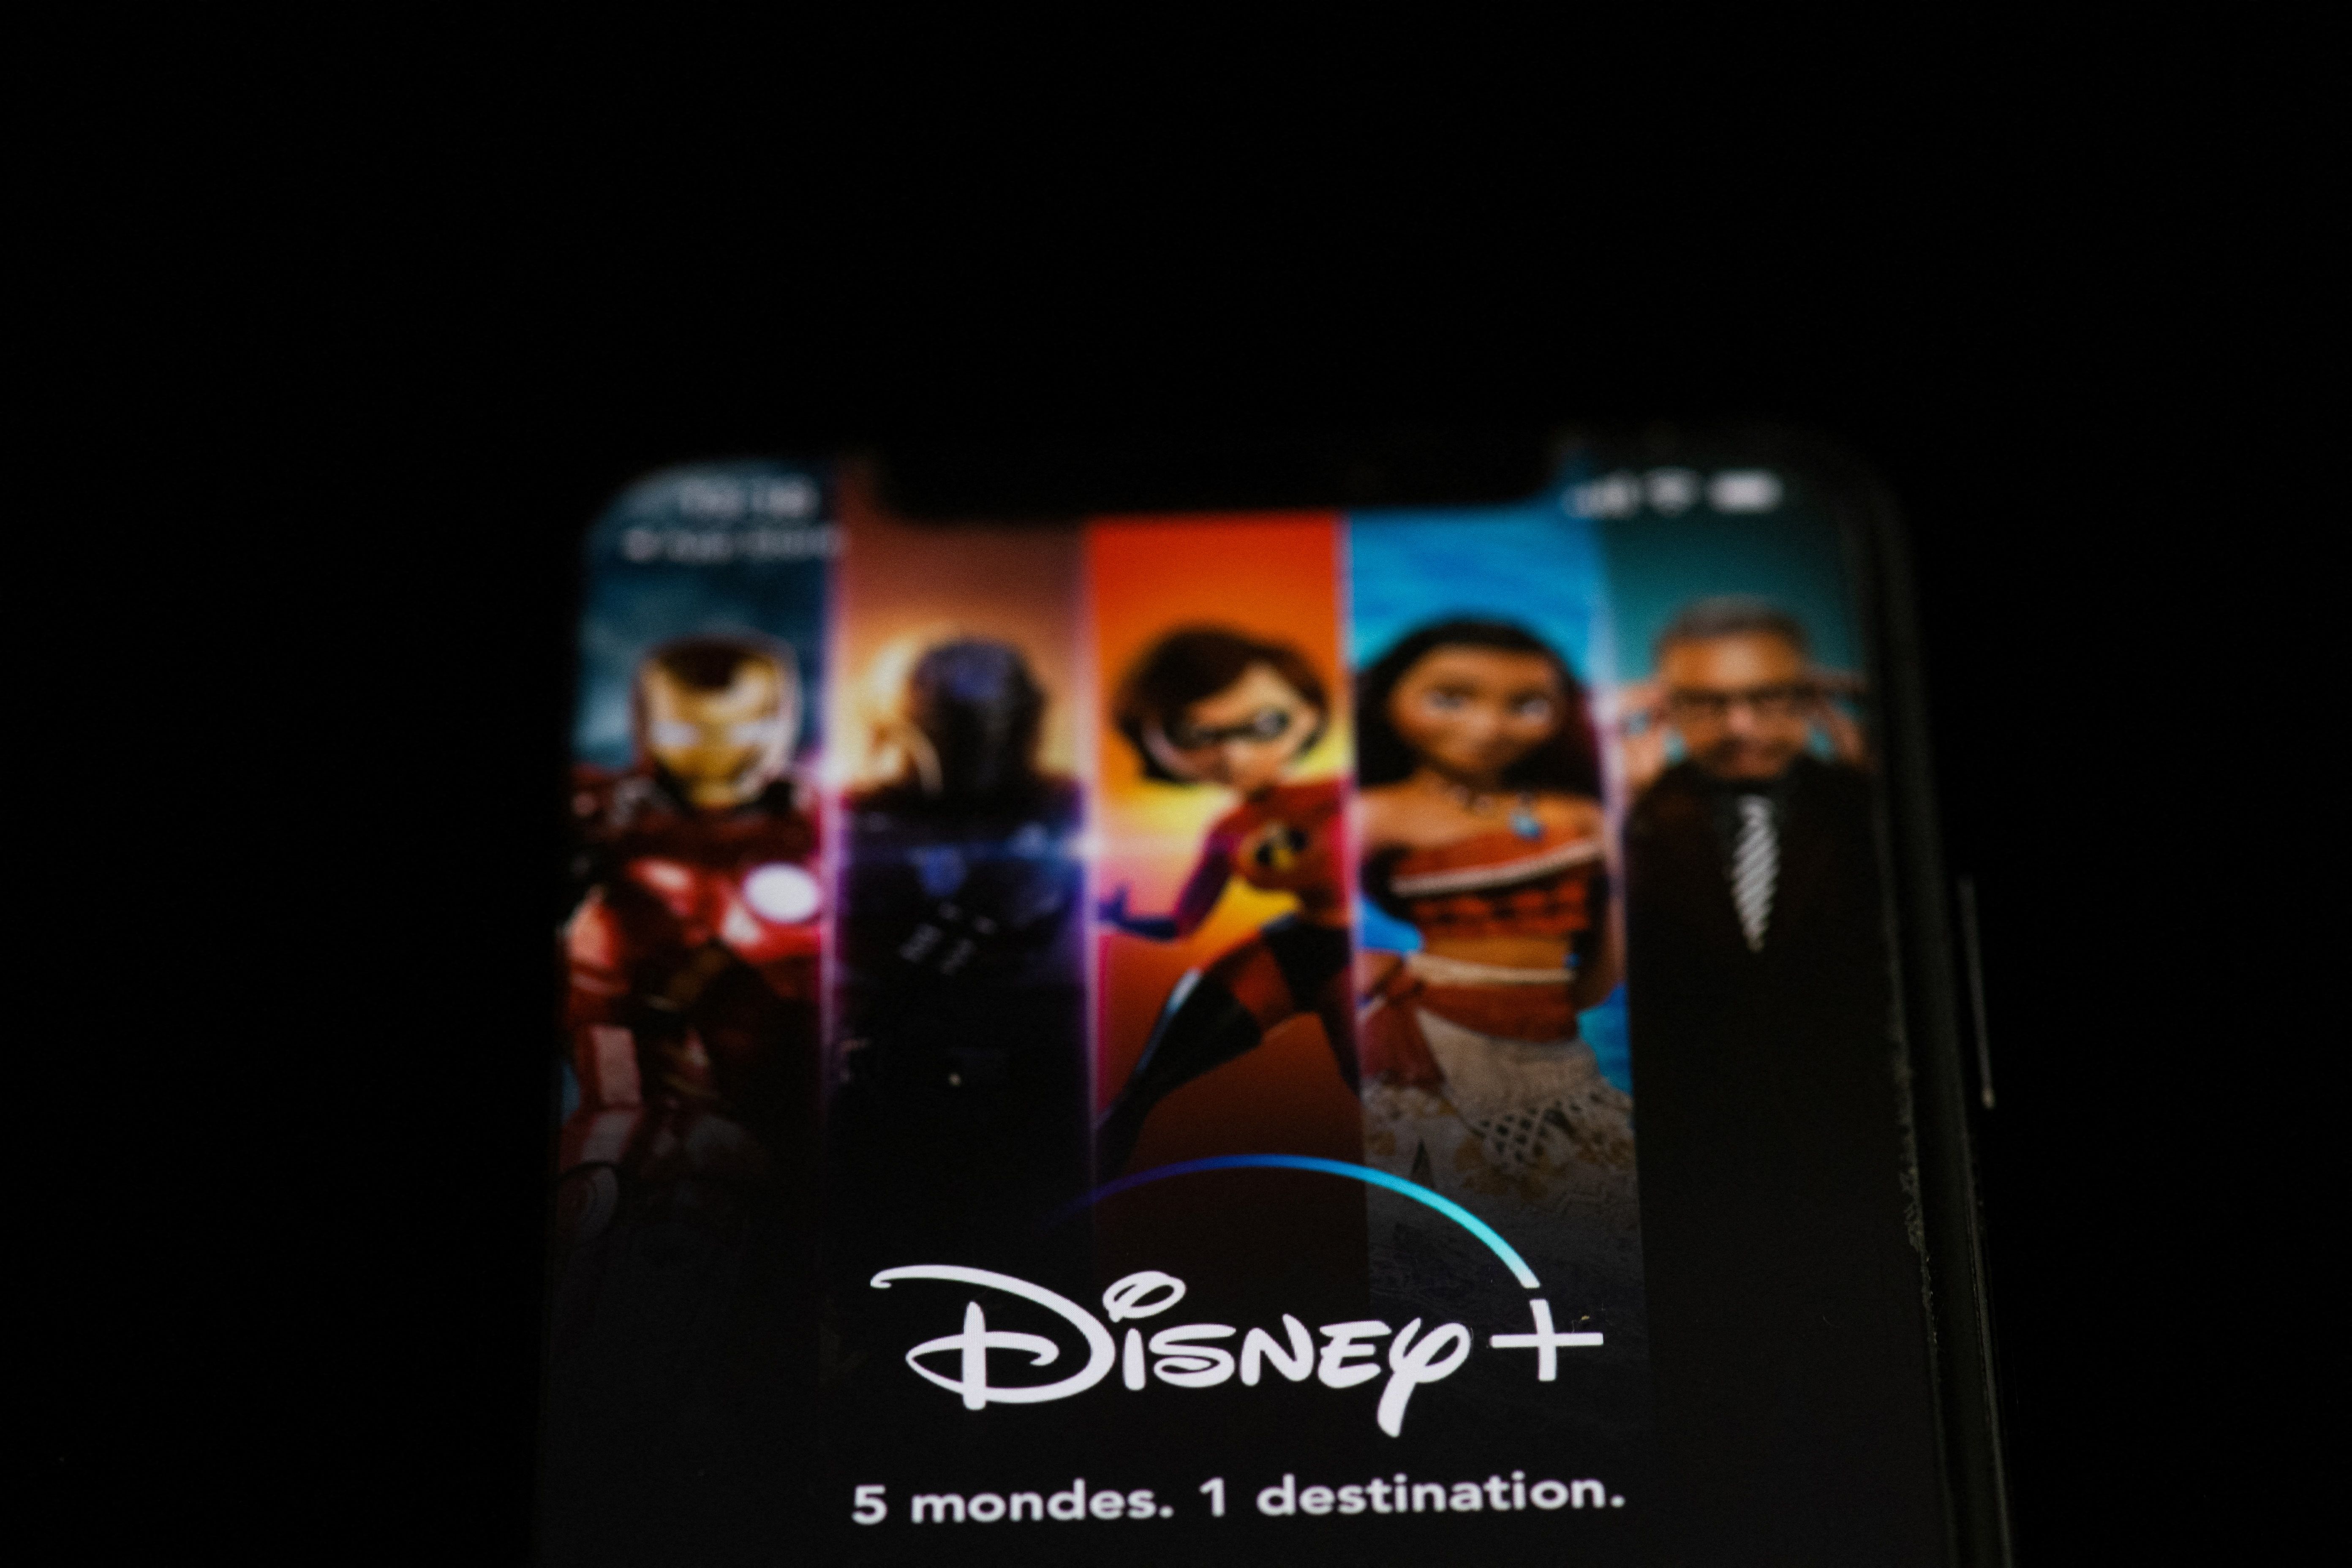 Disney anunció que superó a Netflix en abonados a sus plataformas de "streaming". (Foto Prensa Libre: AFP)